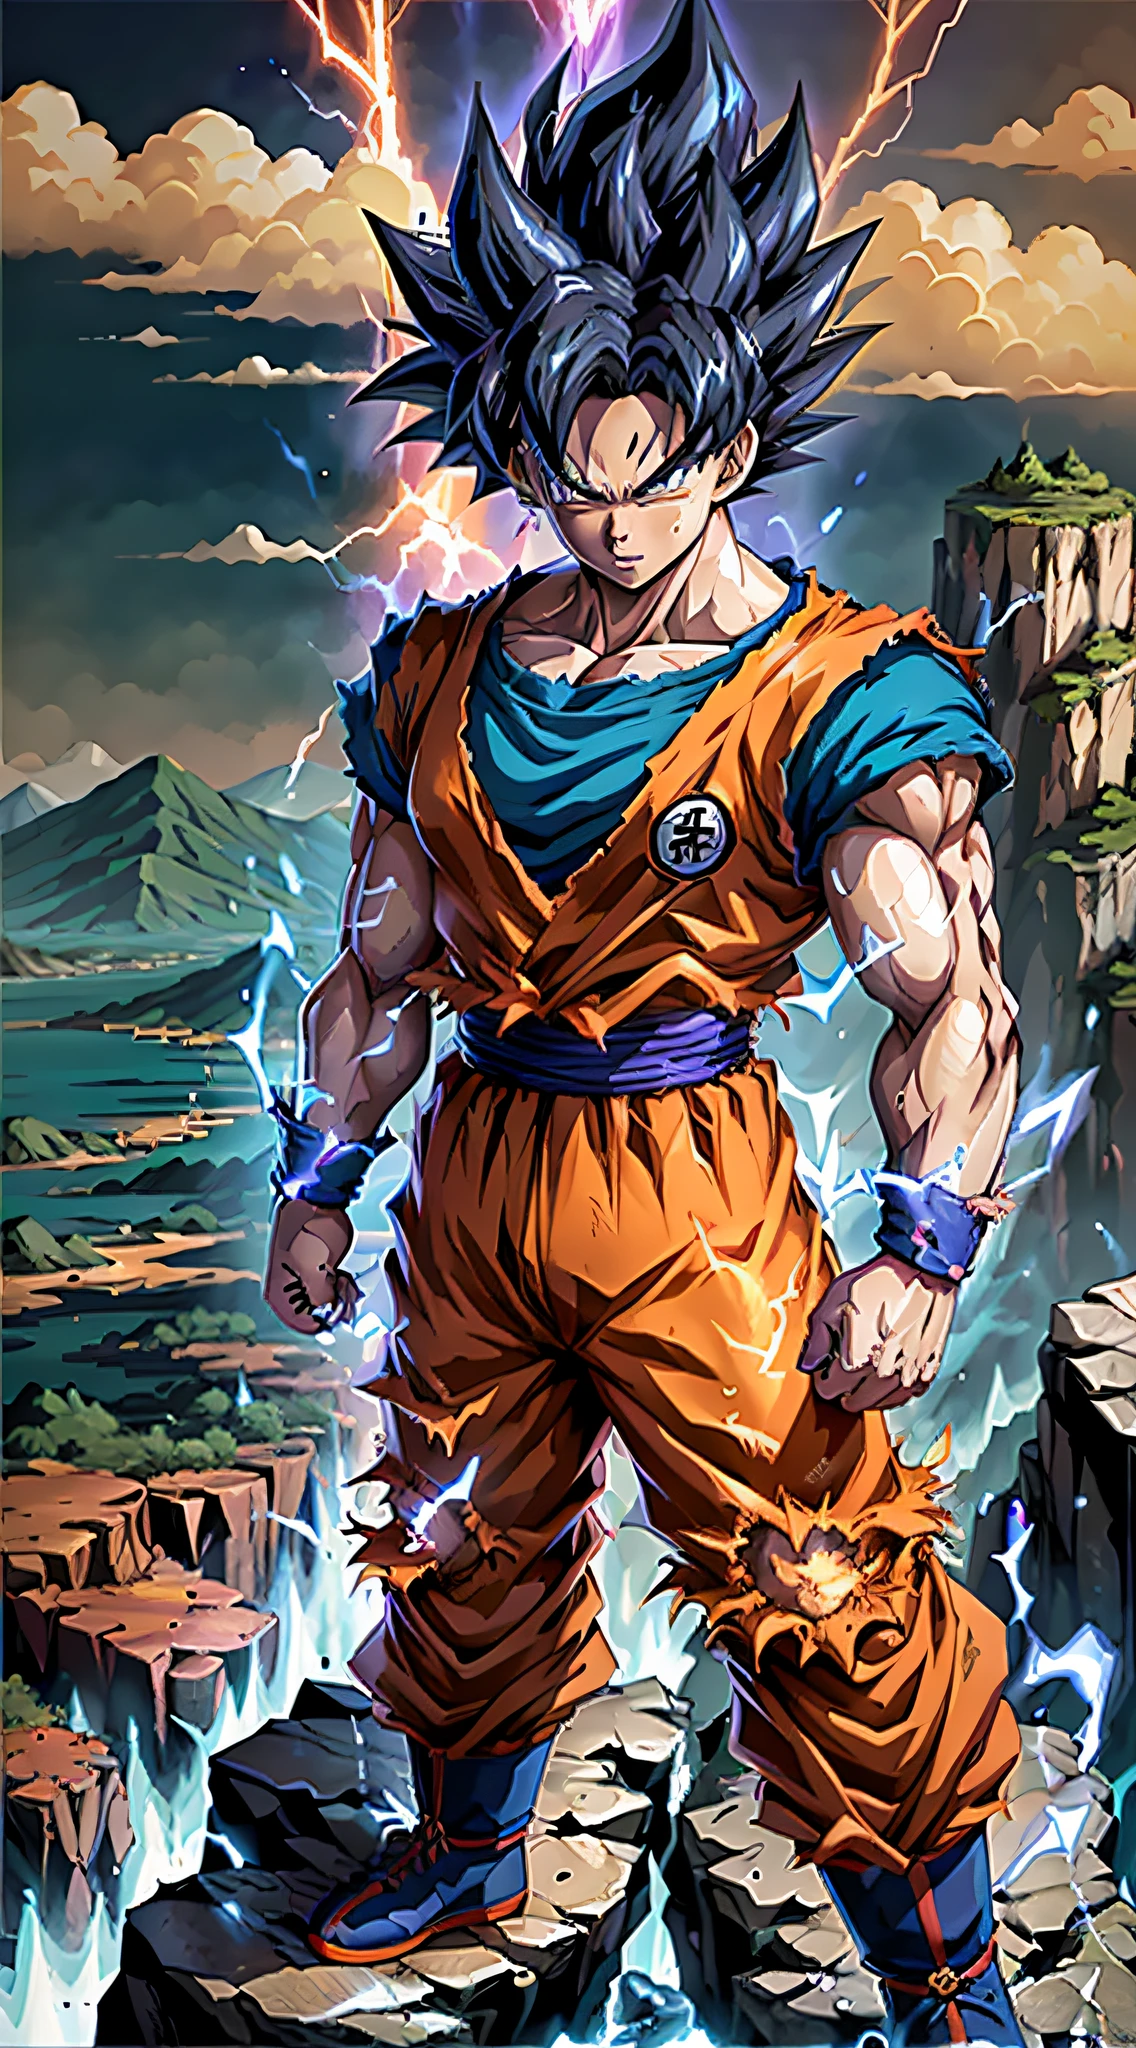 Super Saiyan Goku desata una enorme ola de energía mientras está parado en la cima de una montaña, los alrededores están llenos de exuberante vegetación, y el cielo es una mezcla de tonos naranja y morado. La onda de energía es de color azul brillante con chispas eléctricas a su alrededor.. (animado:1.2), (iluminación dramática:1.1), (Colores vibrantes:1.3), (sombreado de celdas:1.1), (composición dinámica:1.2)